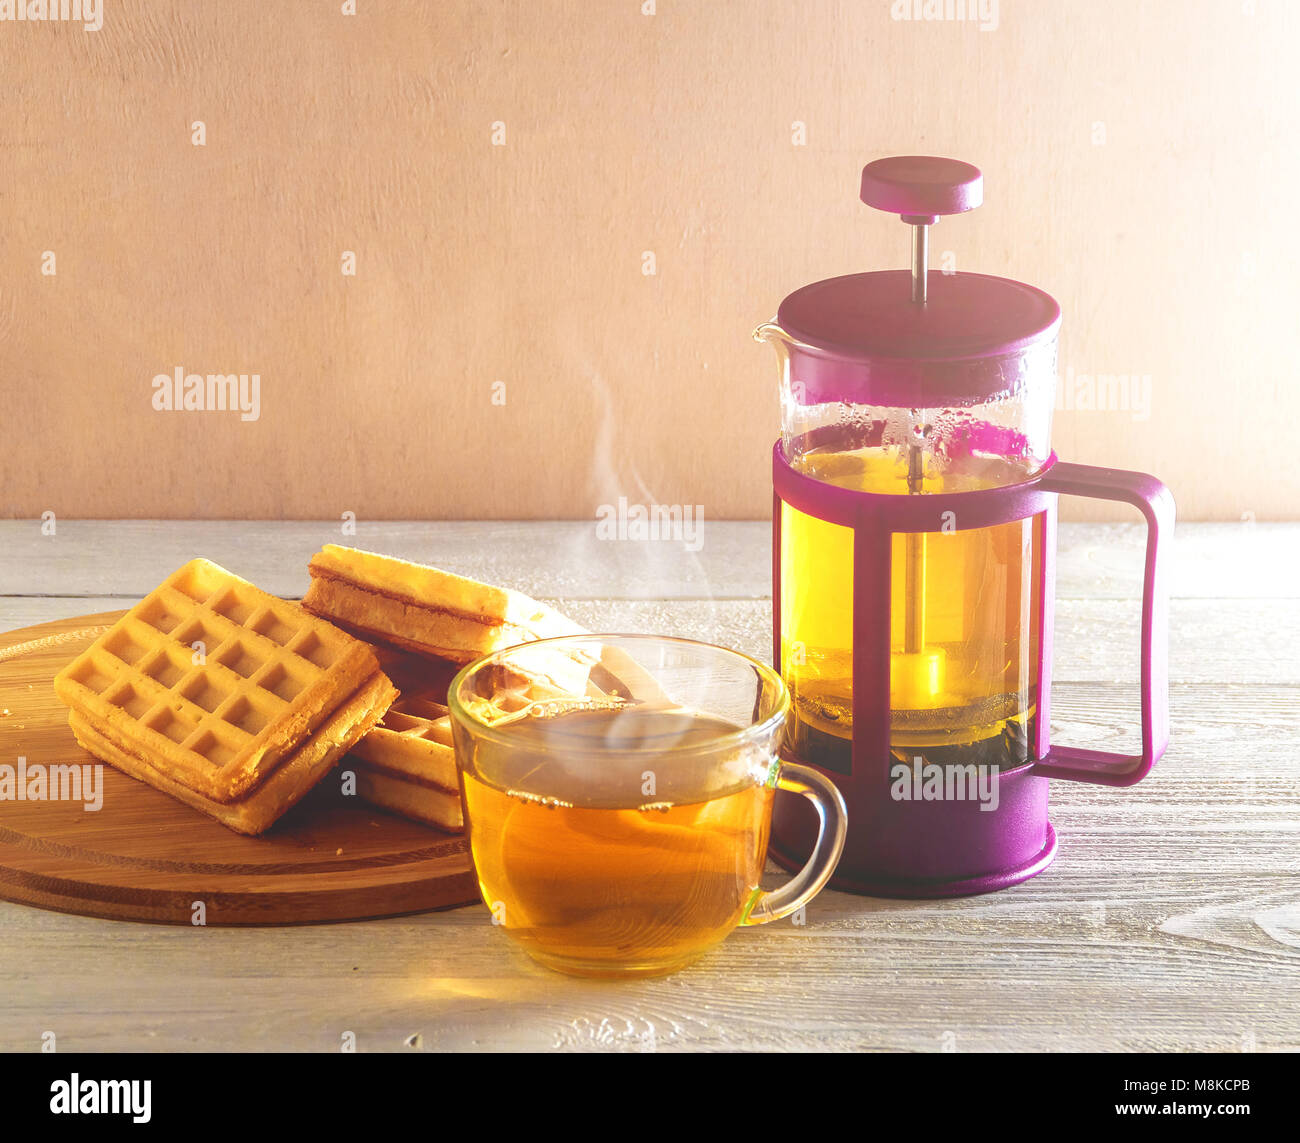 Waffles fatti in casa con la marmellata sul vecchio tavolo in legno. Wafers con tazza di tè con teiera. Foto Stock